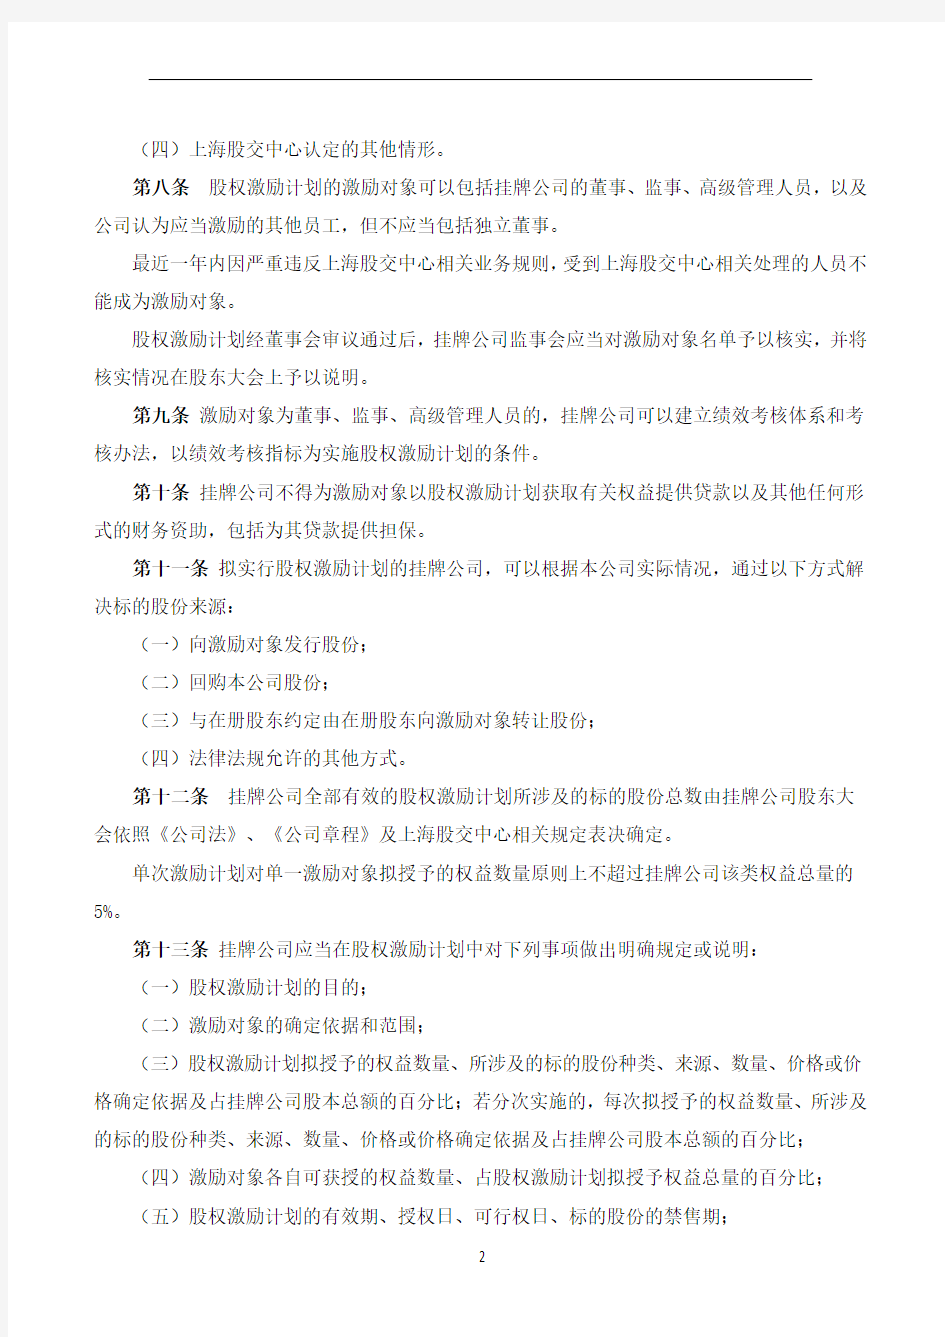 上海股权托管交易中心股份转让系统挂牌公司股权激励管理办法